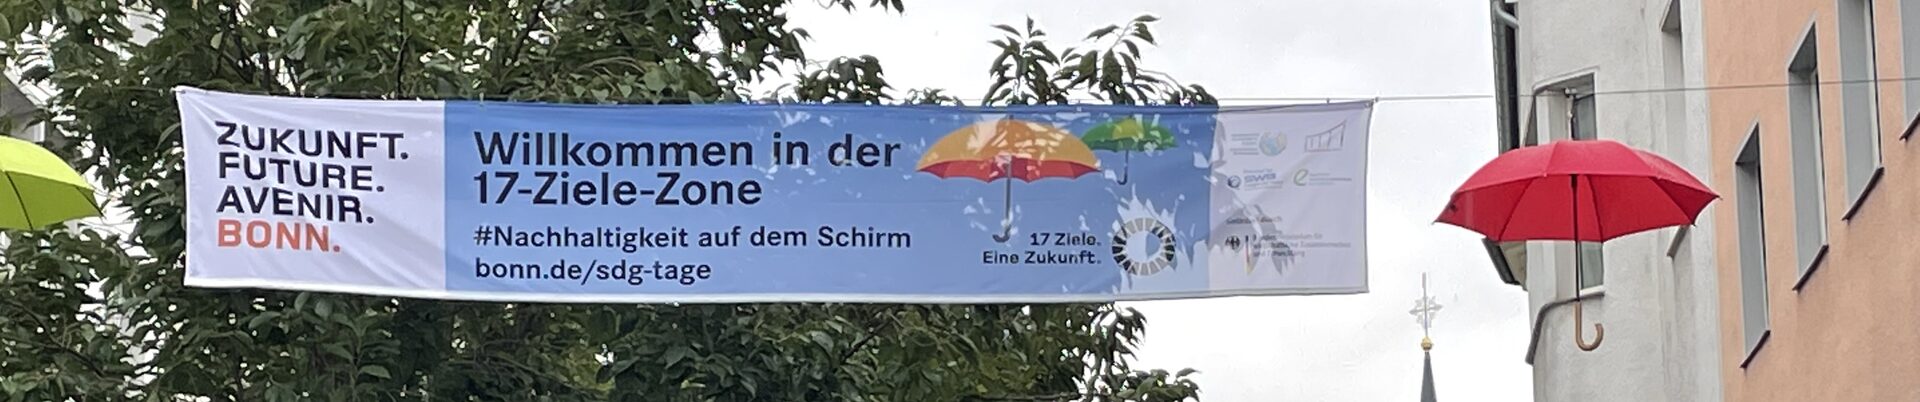 Banner "17-Ziele-Zone" zu den SDGs in der Friedrichstraße, die  mit bunten Regenschirmen geschmückt ist.